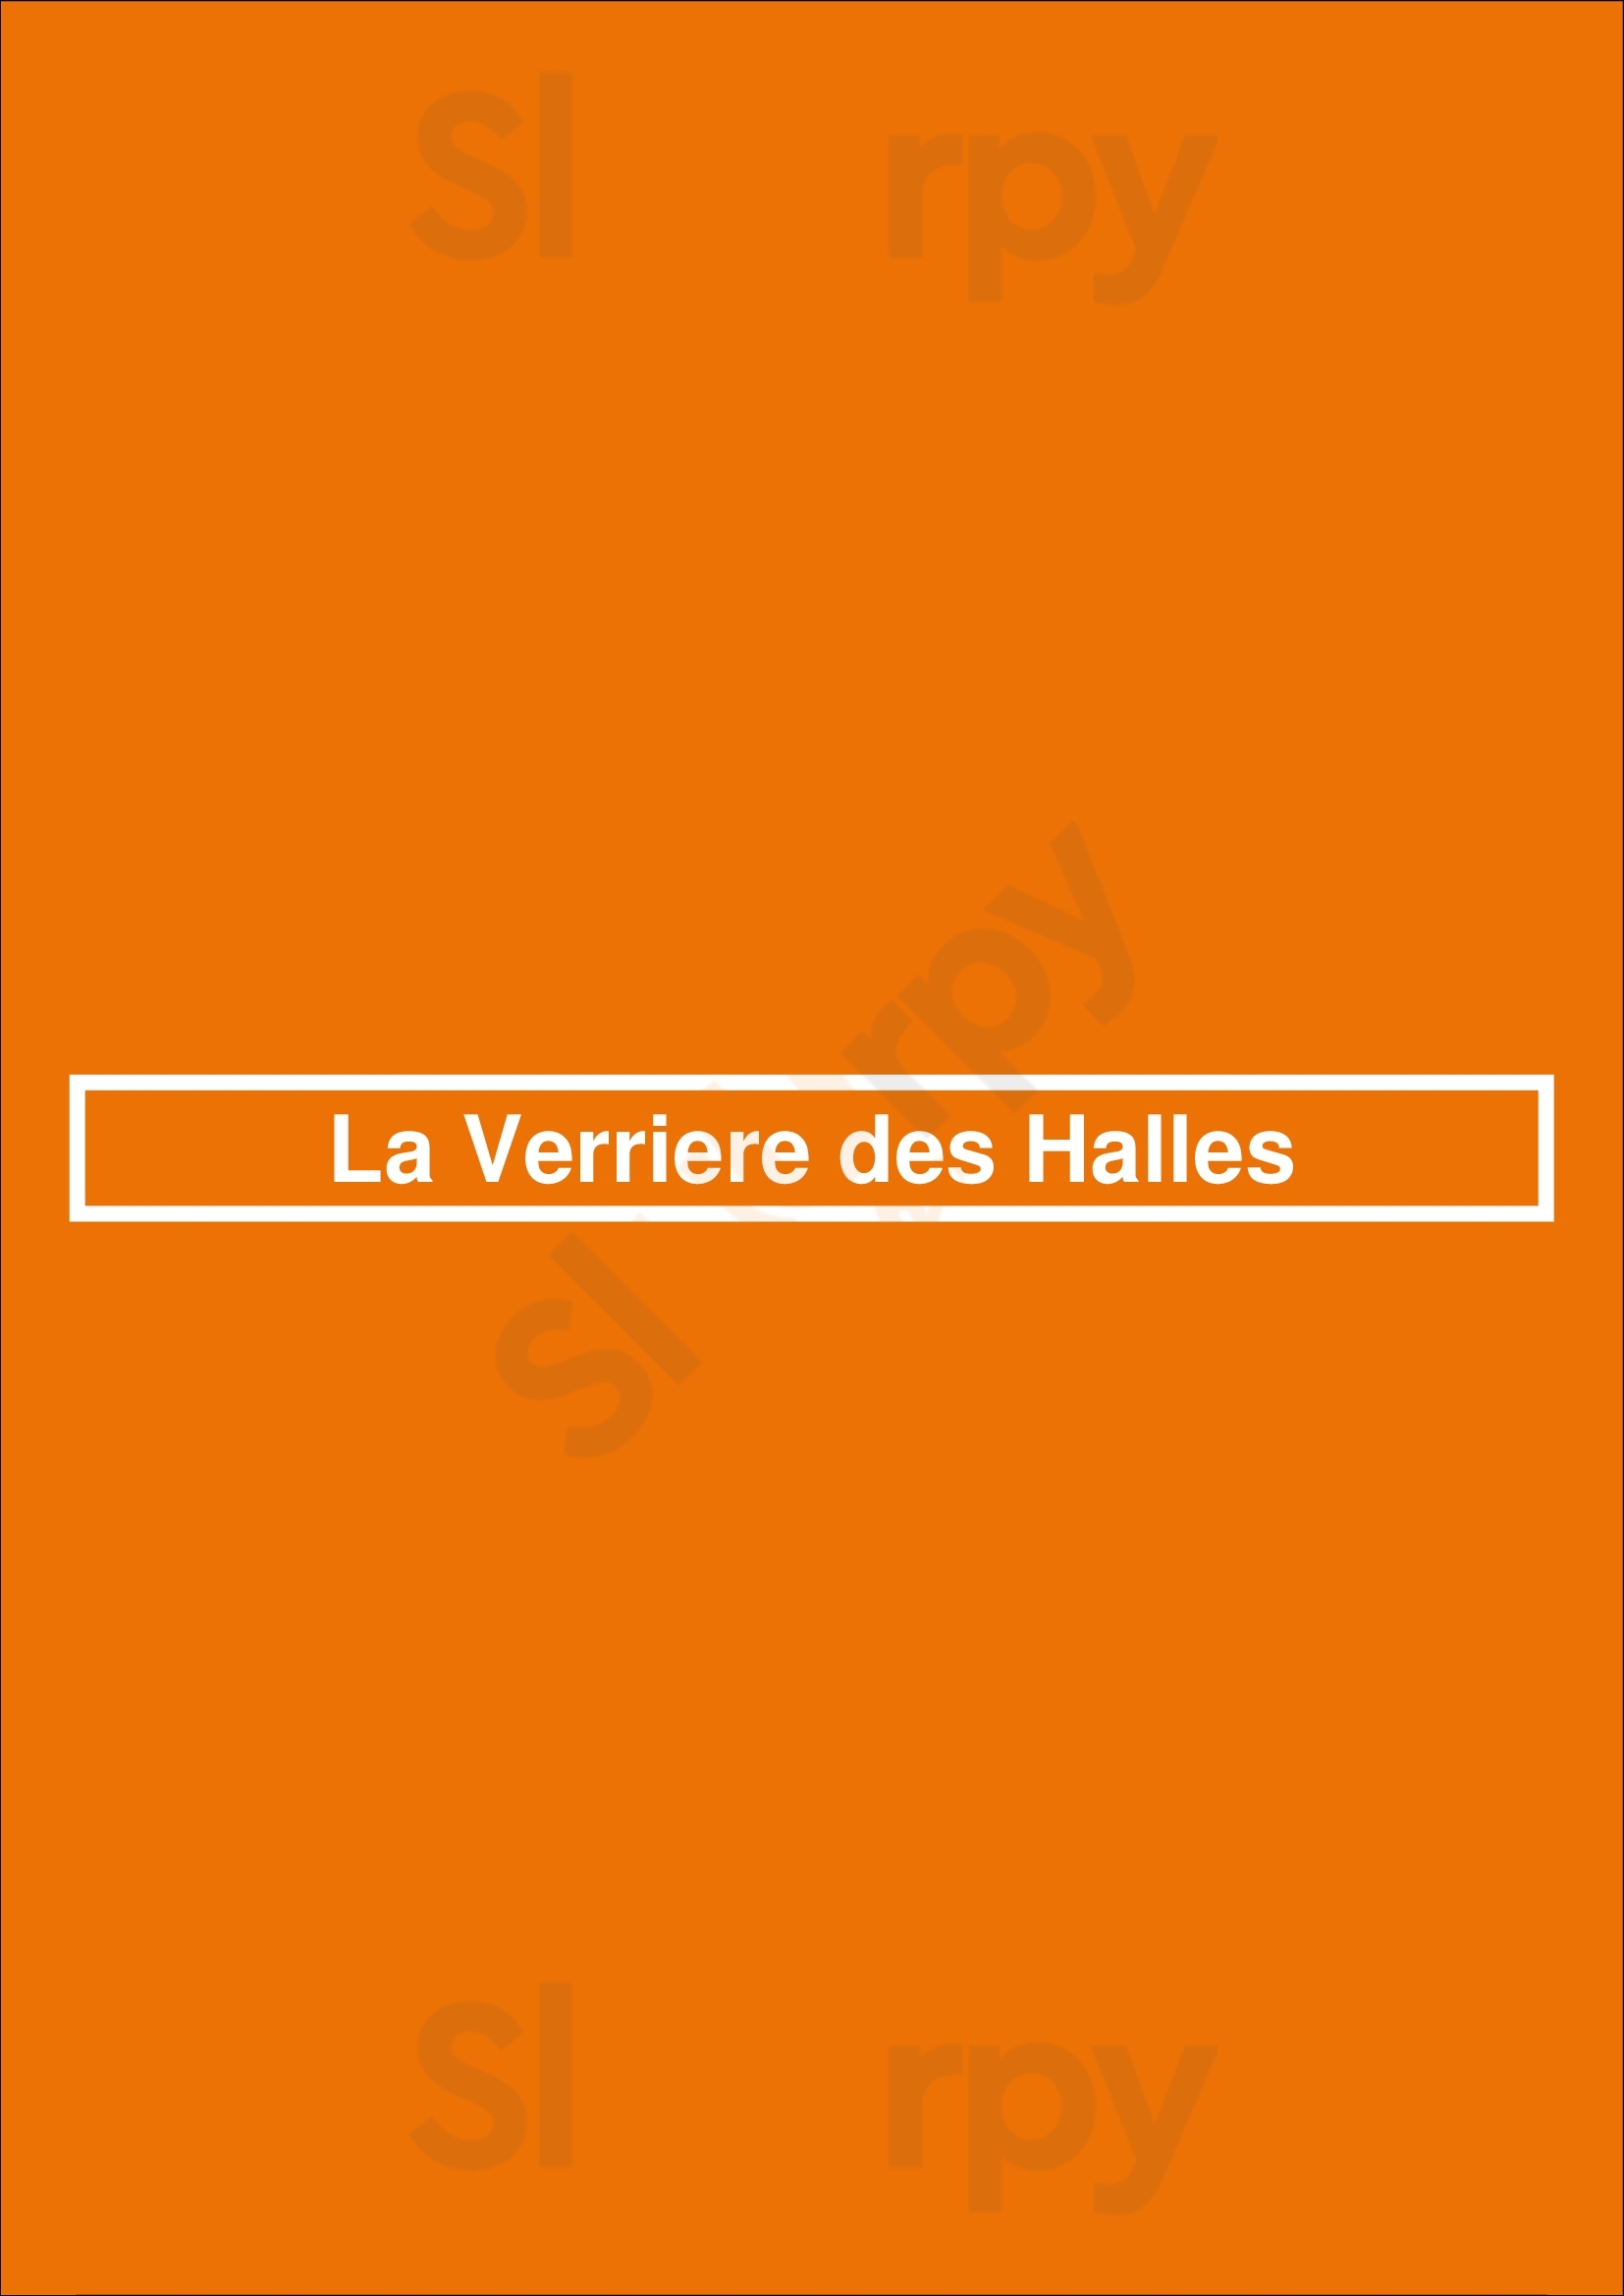 La Verriere Des Halles Paris Menu - 1